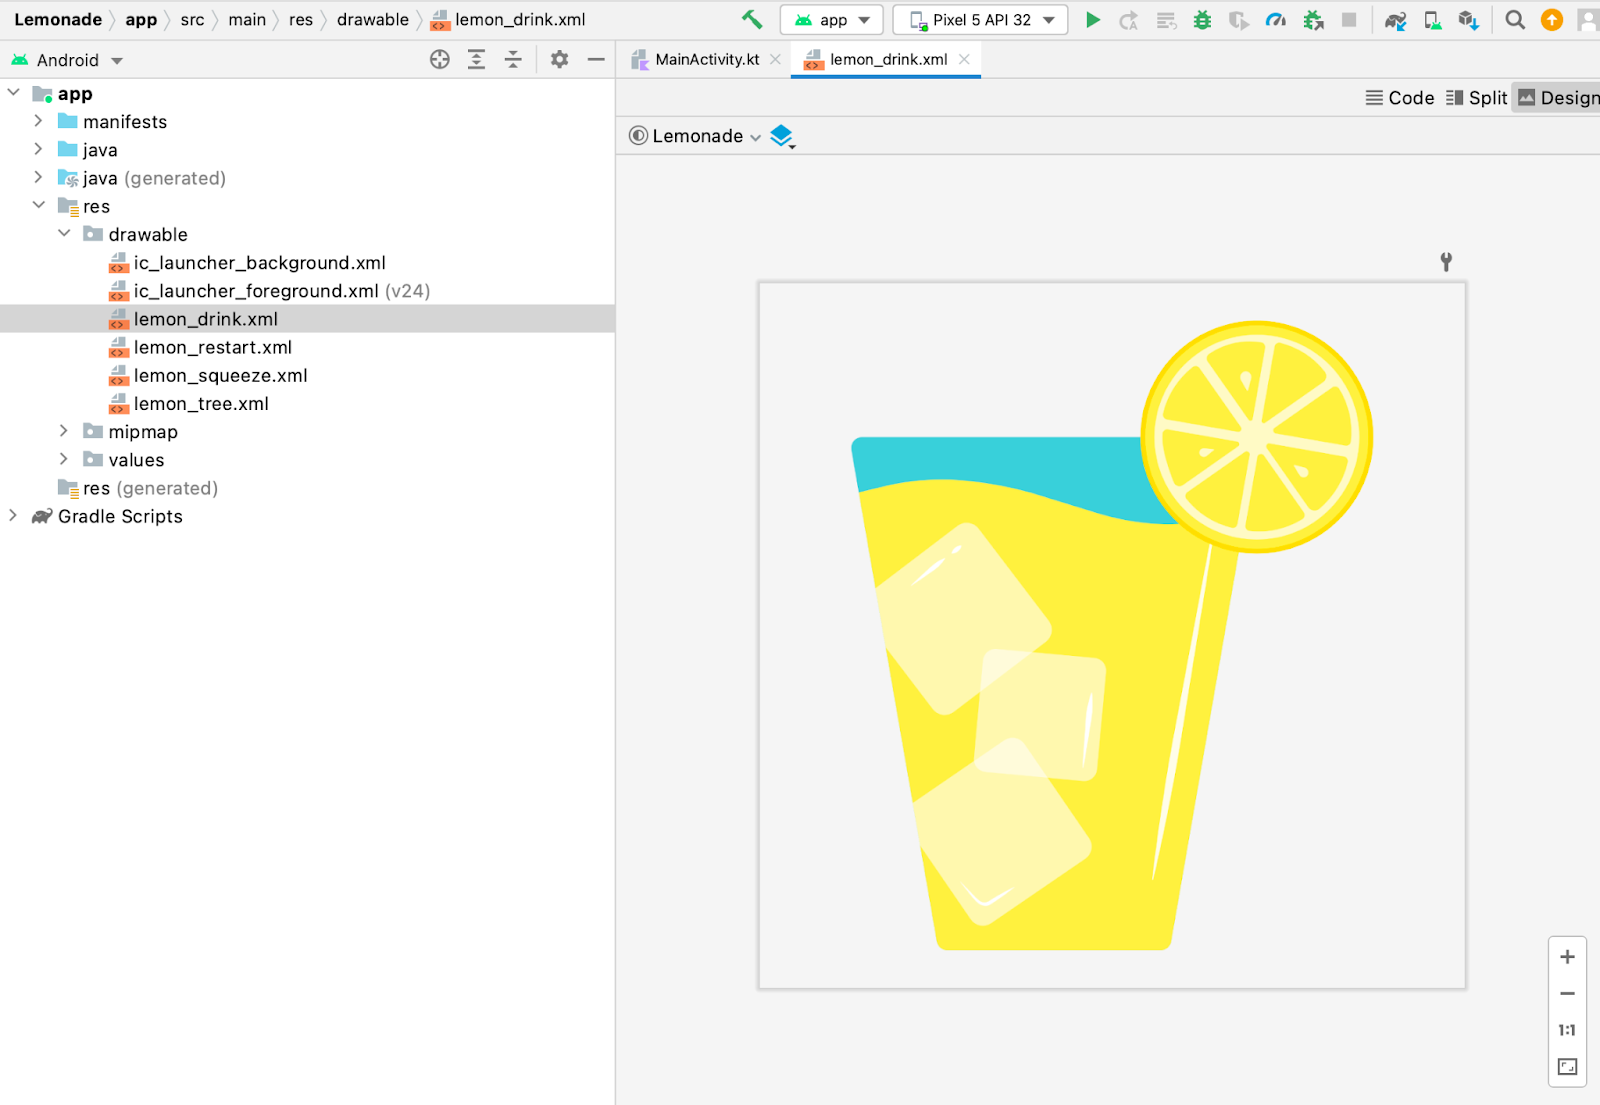 En Android Studio, el panel Project se muestra con un archivo de elemento de diseño lemon_drink.xml seleccionado. En el panel Design, se abre una vista previa del archivo de elemento de diseño, que es una imagen de un vaso grande de limonada.